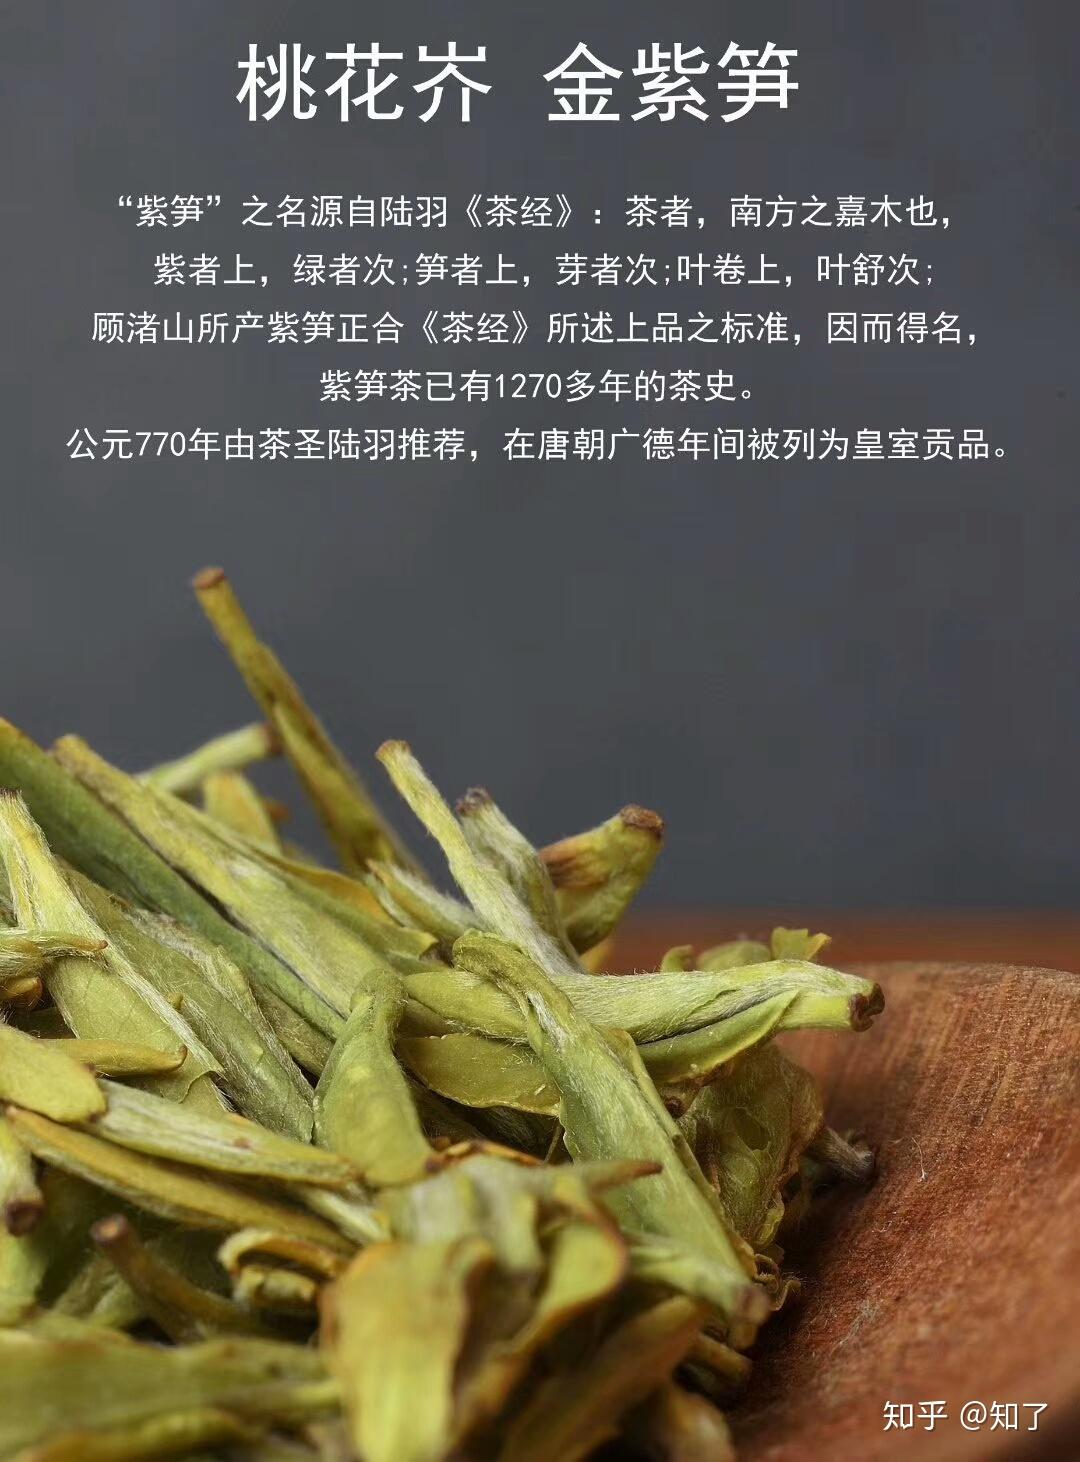 八百年的贡茶为何没有西湖龙井出名